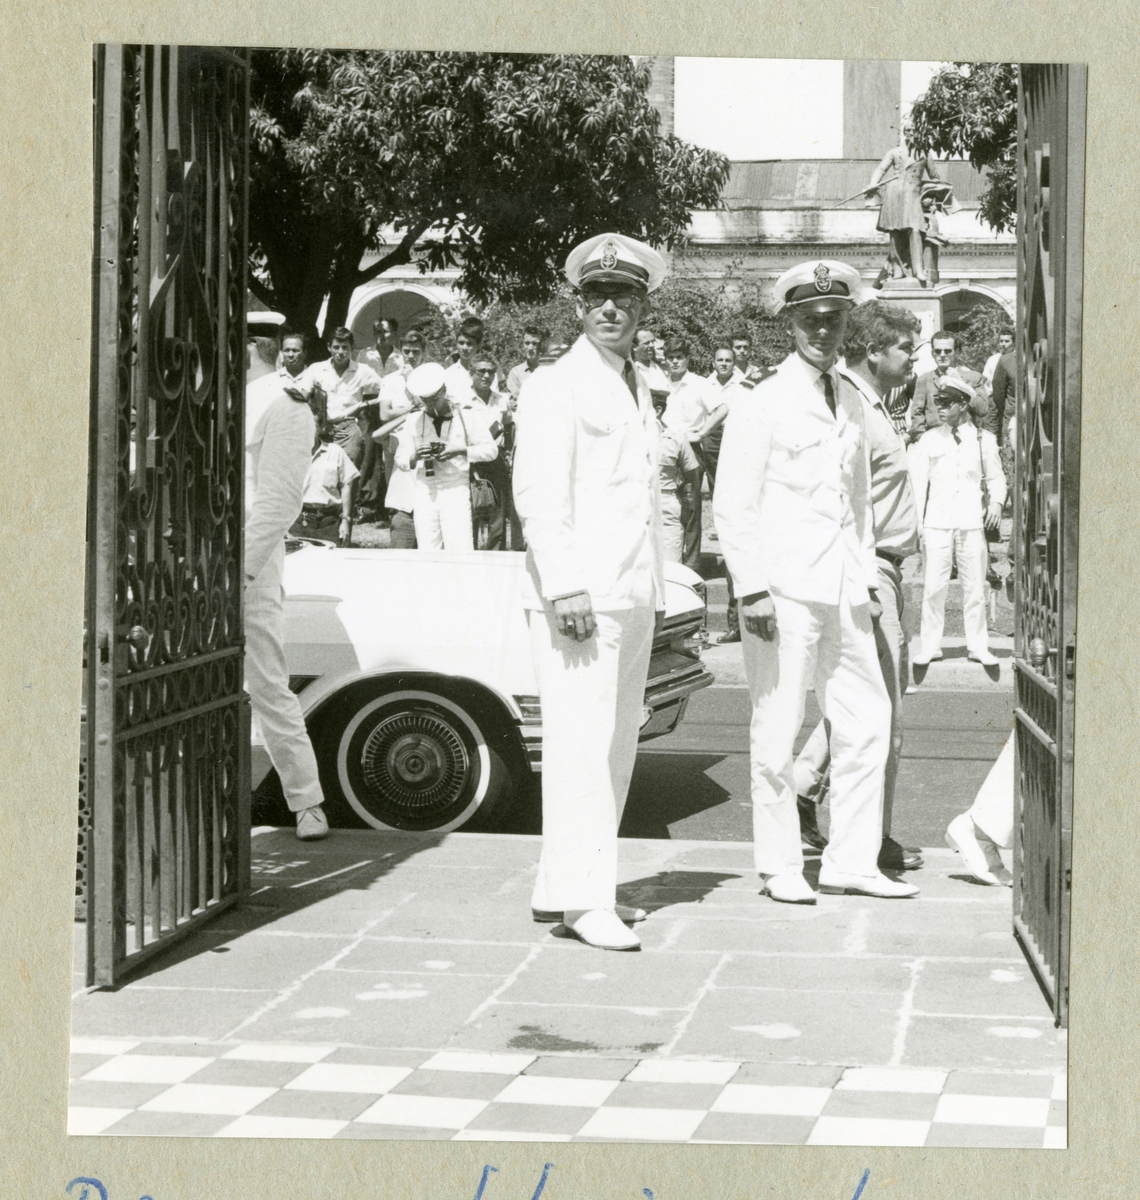 Bilden föreställer två män i vita uniformer som står i en grindöppning. I bakgrunden syns en bil och ytterligare vitklädda personer. Bilden är tagen i Puntarenas under minfartyget Älvsnabbens långresa 1966-1967.